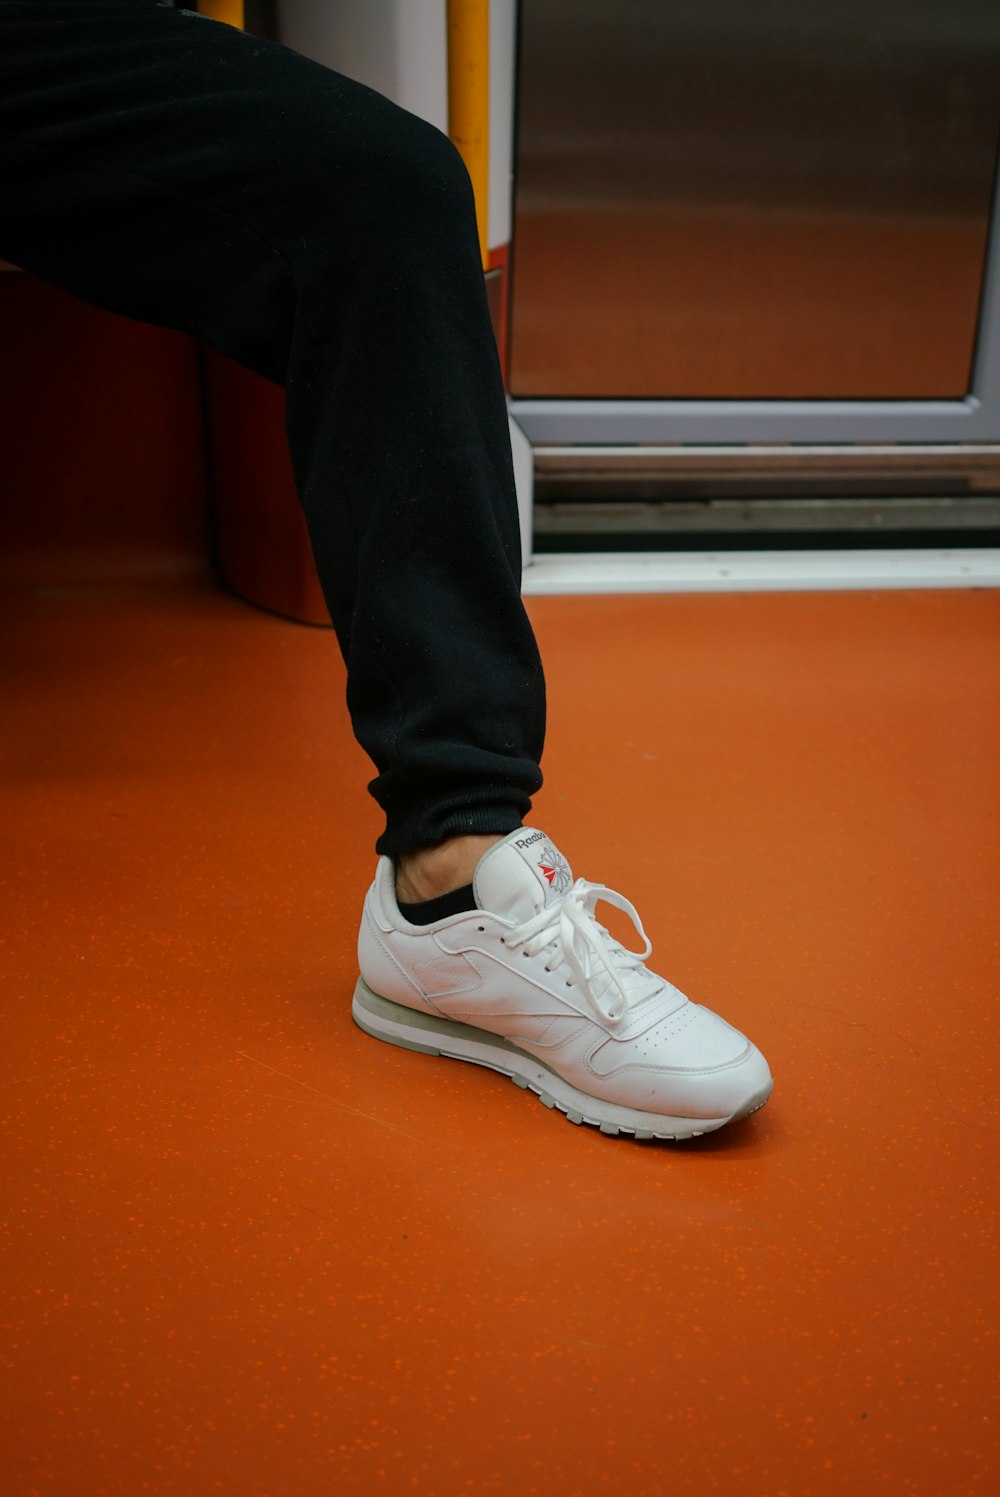 Una persona parada en un tren con el pie en el suelo